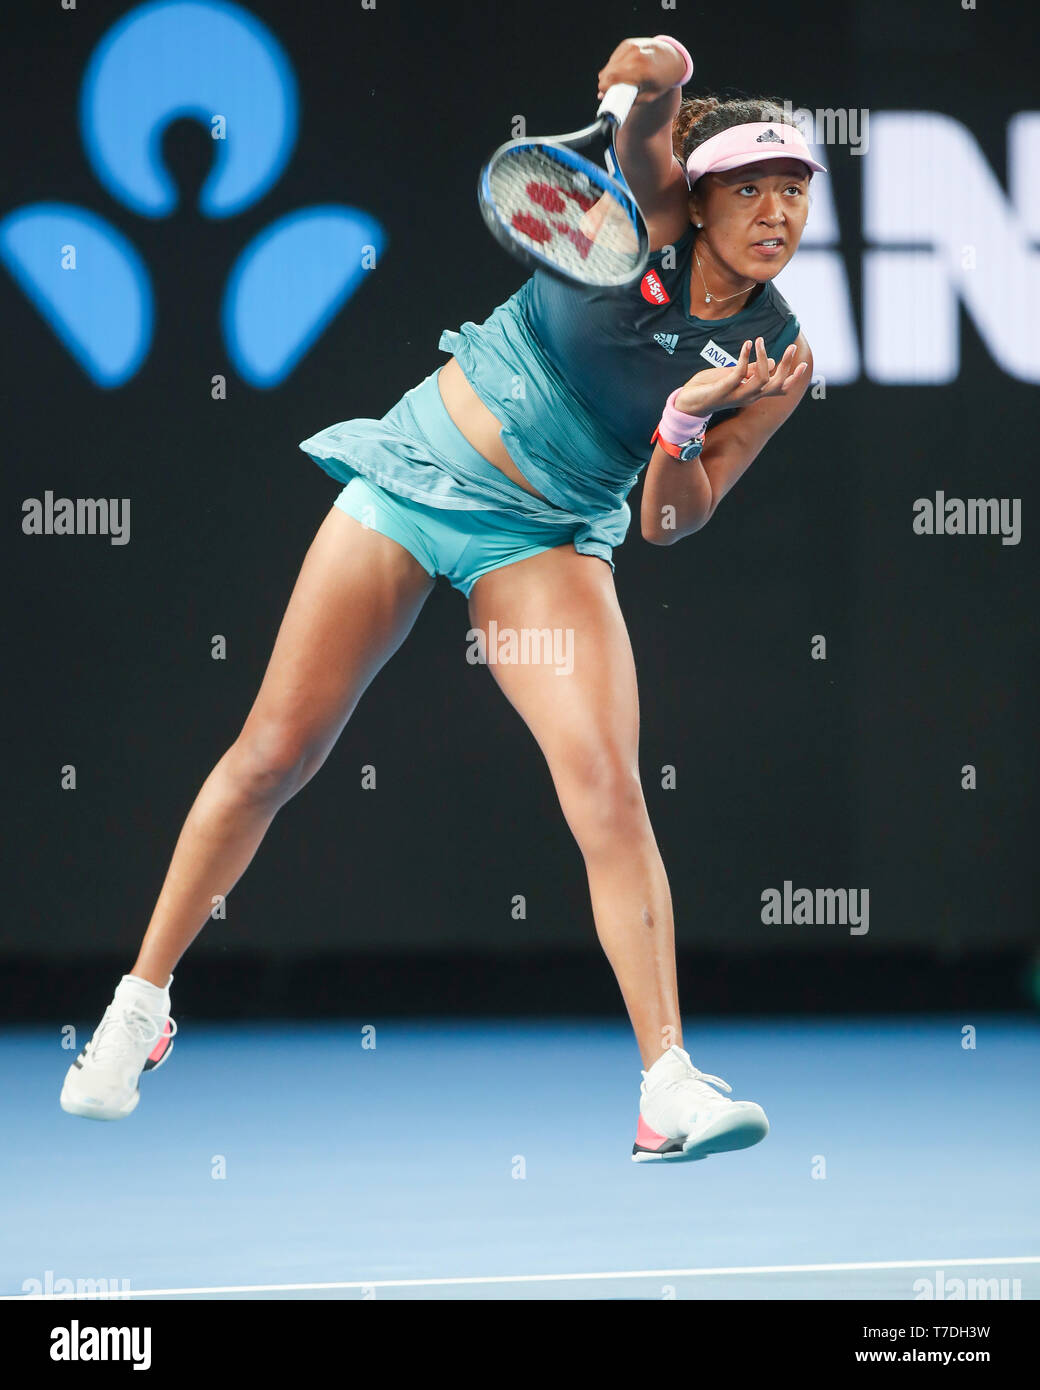 Japanese tennis player Naomi Osaka playing during Australian Open 2019 tennis tournament, Melbourne Park, Melbourne, Victoria, Australia Stock Photo